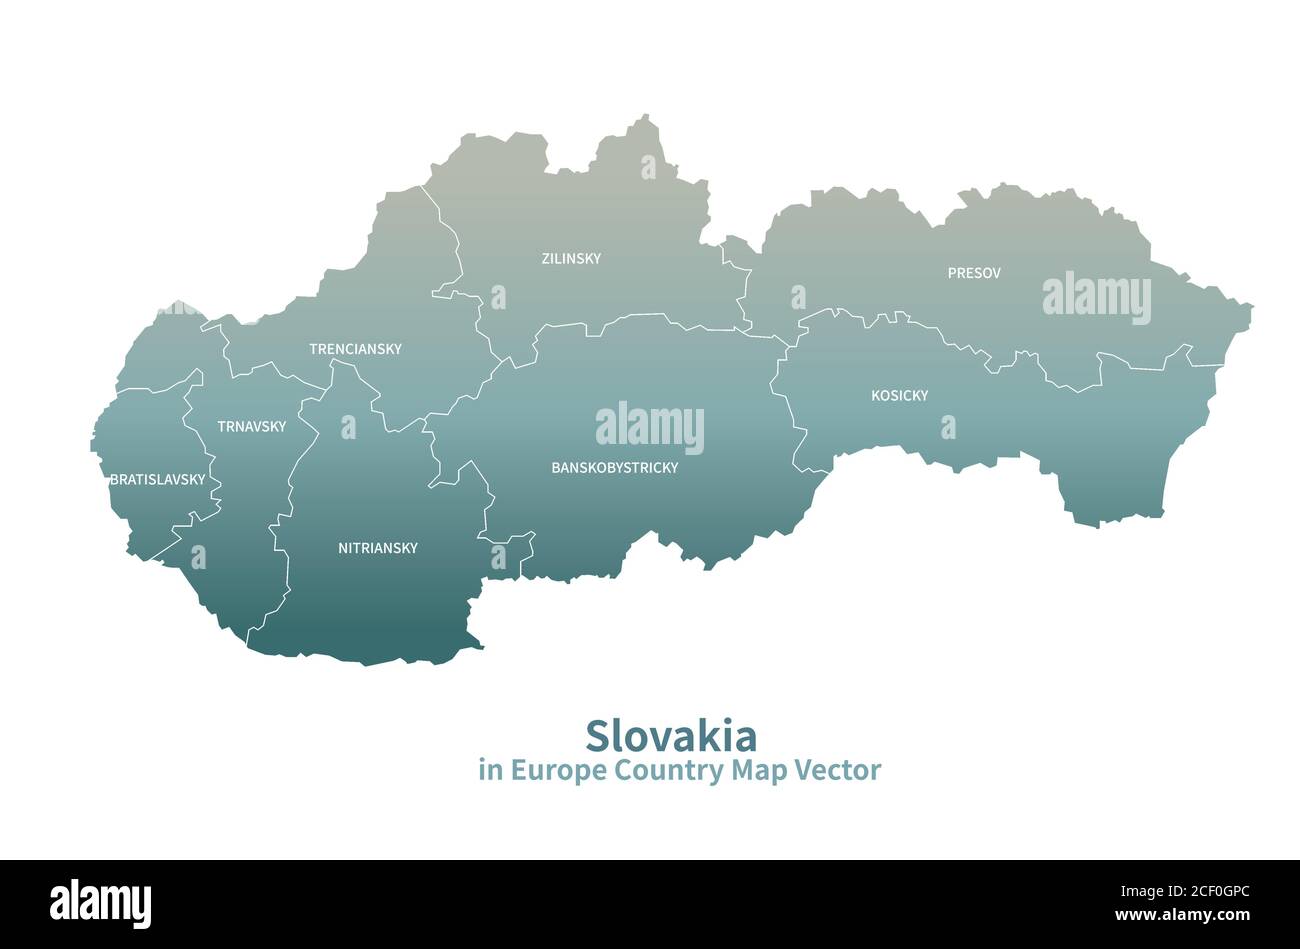 Slovakia vector map. European Country Map Green Series. Stock Vector